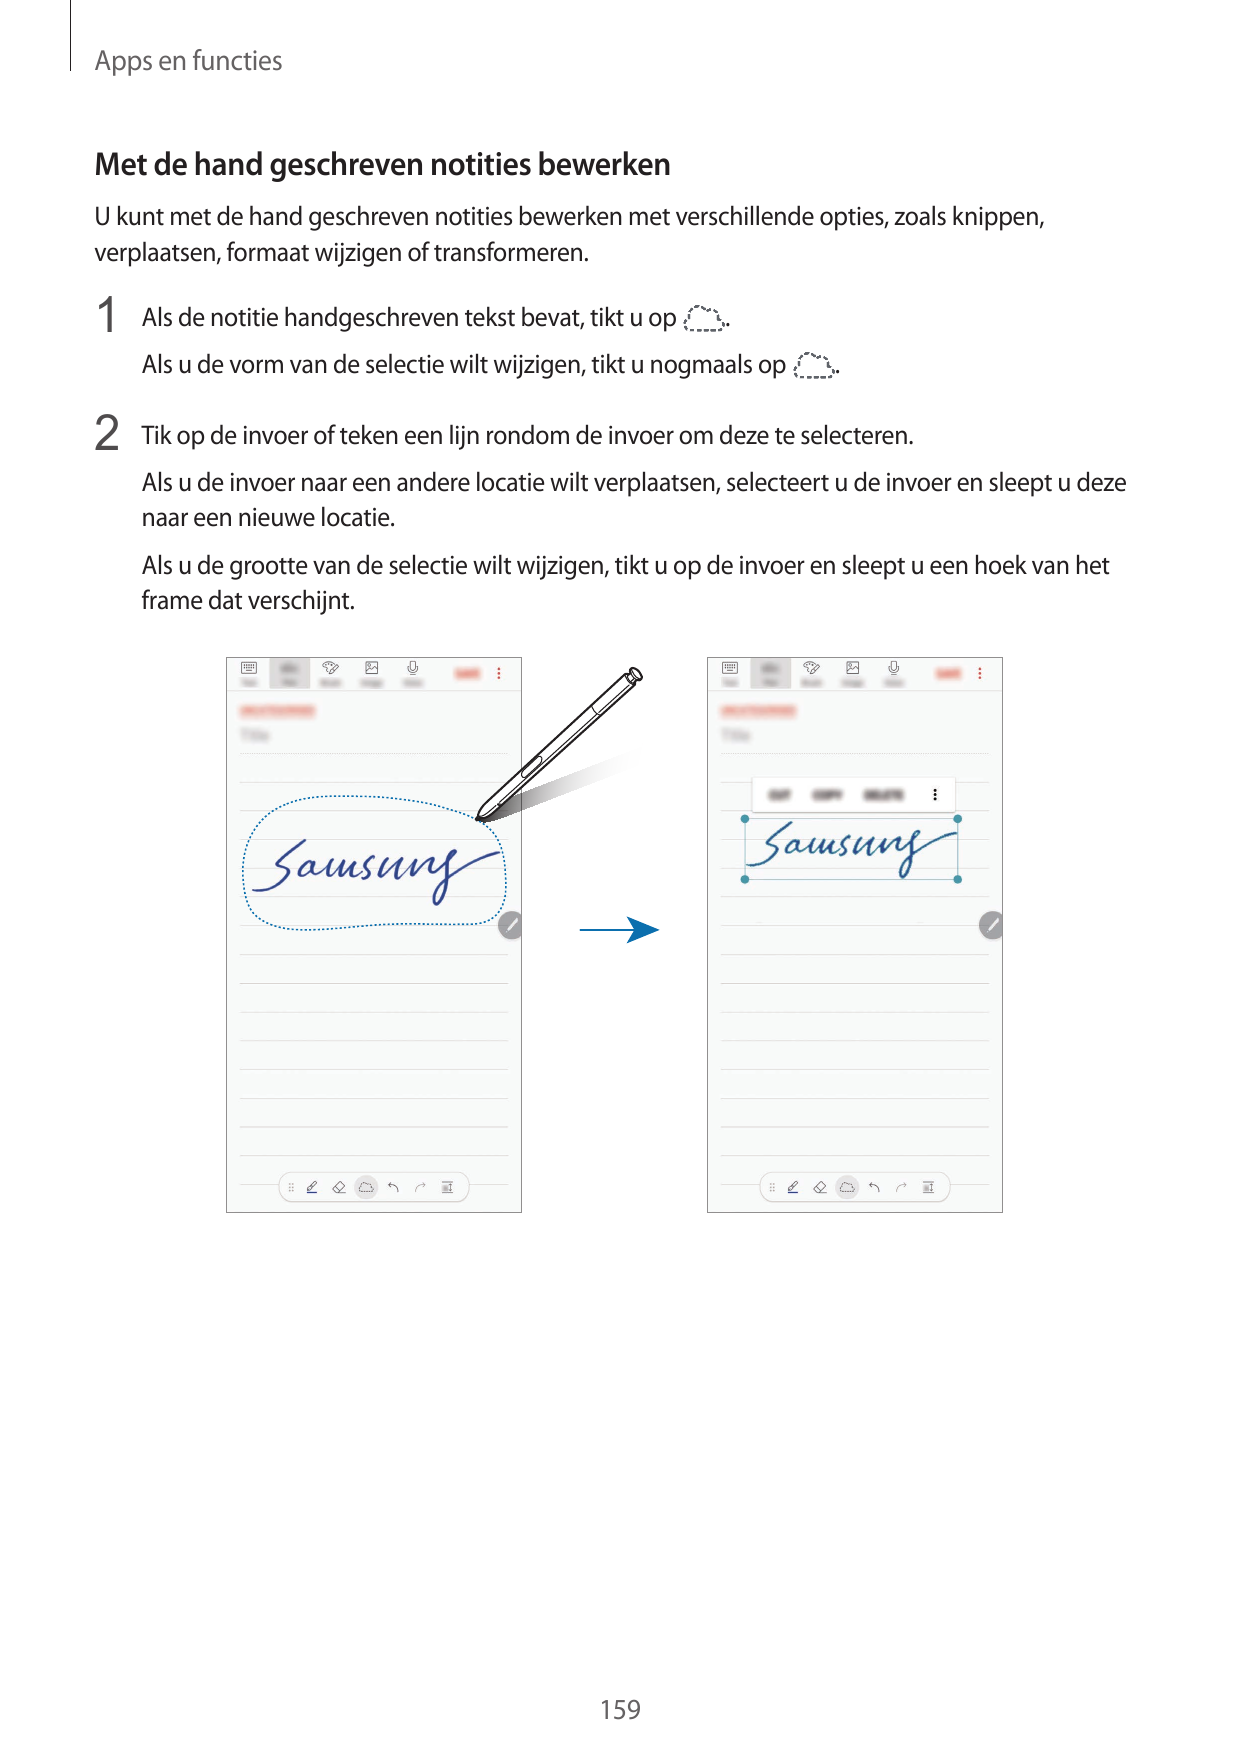 Apps en functiesMet de hand geschreven notities bewerkenU kunt met de hand geschreven notities bewerken met verschillende opties